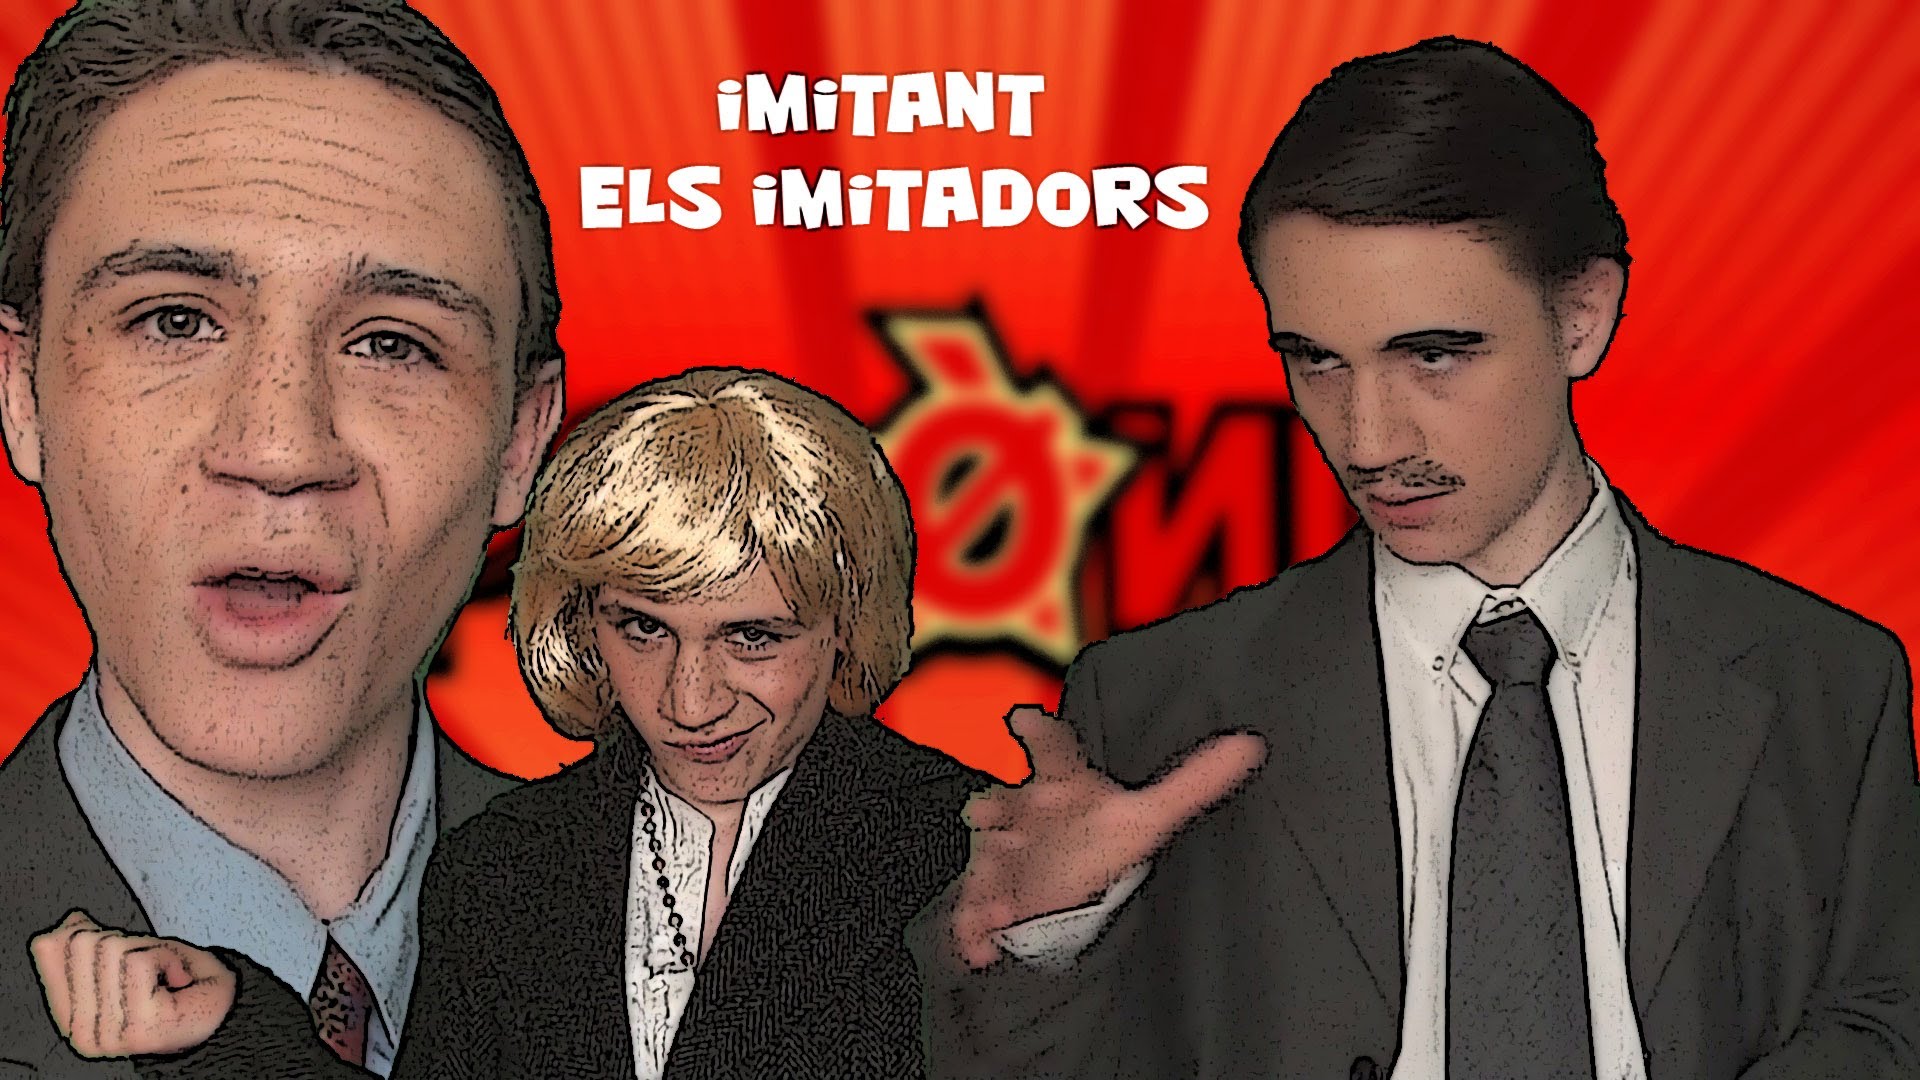 IMITANT ELS IMITADORS! de AdriaVlogs